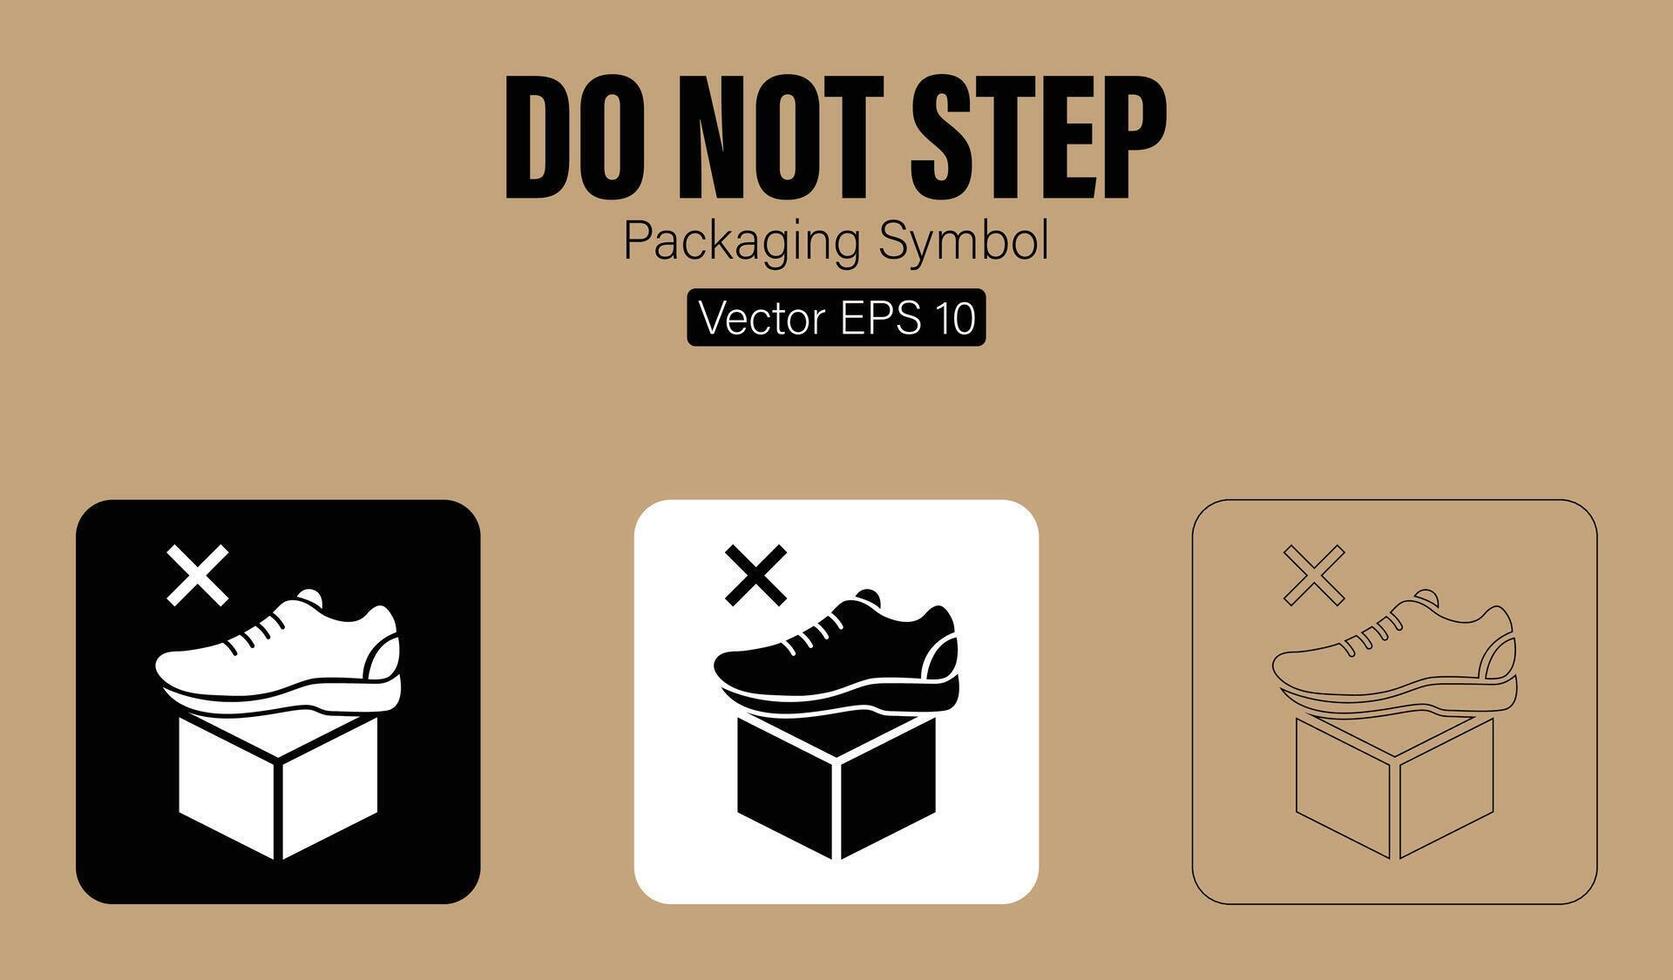 Doen niet stap verpakking symbool vector